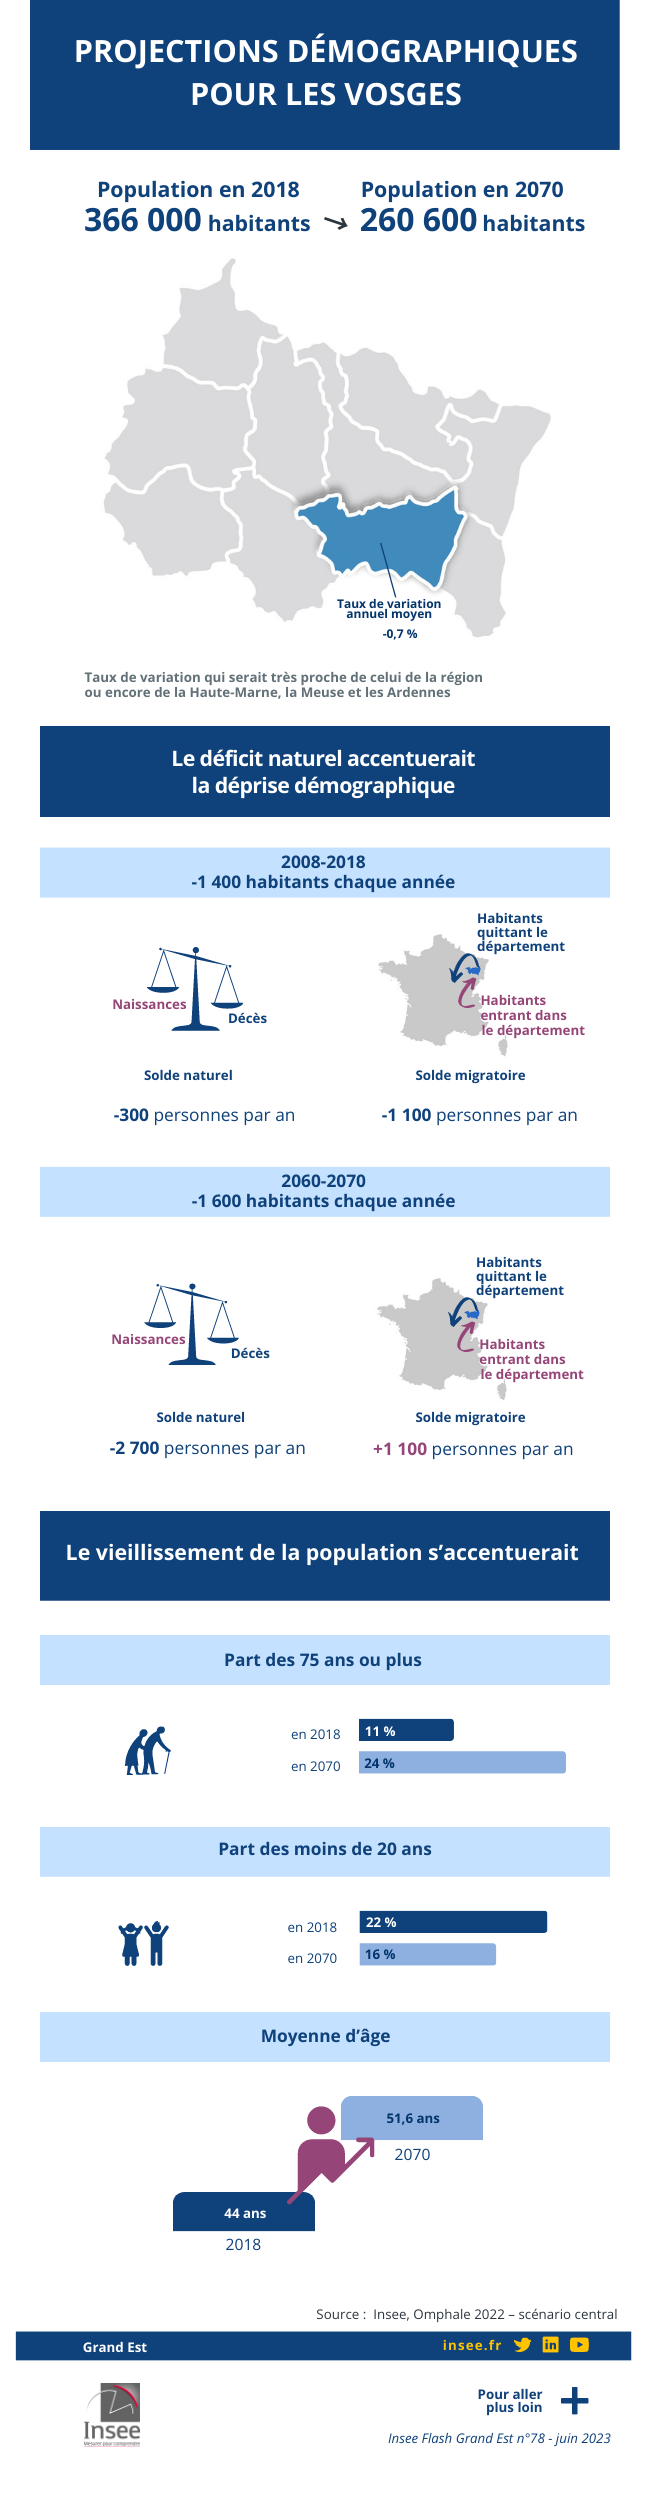 Insee - Projections démographiques dans les Vosges